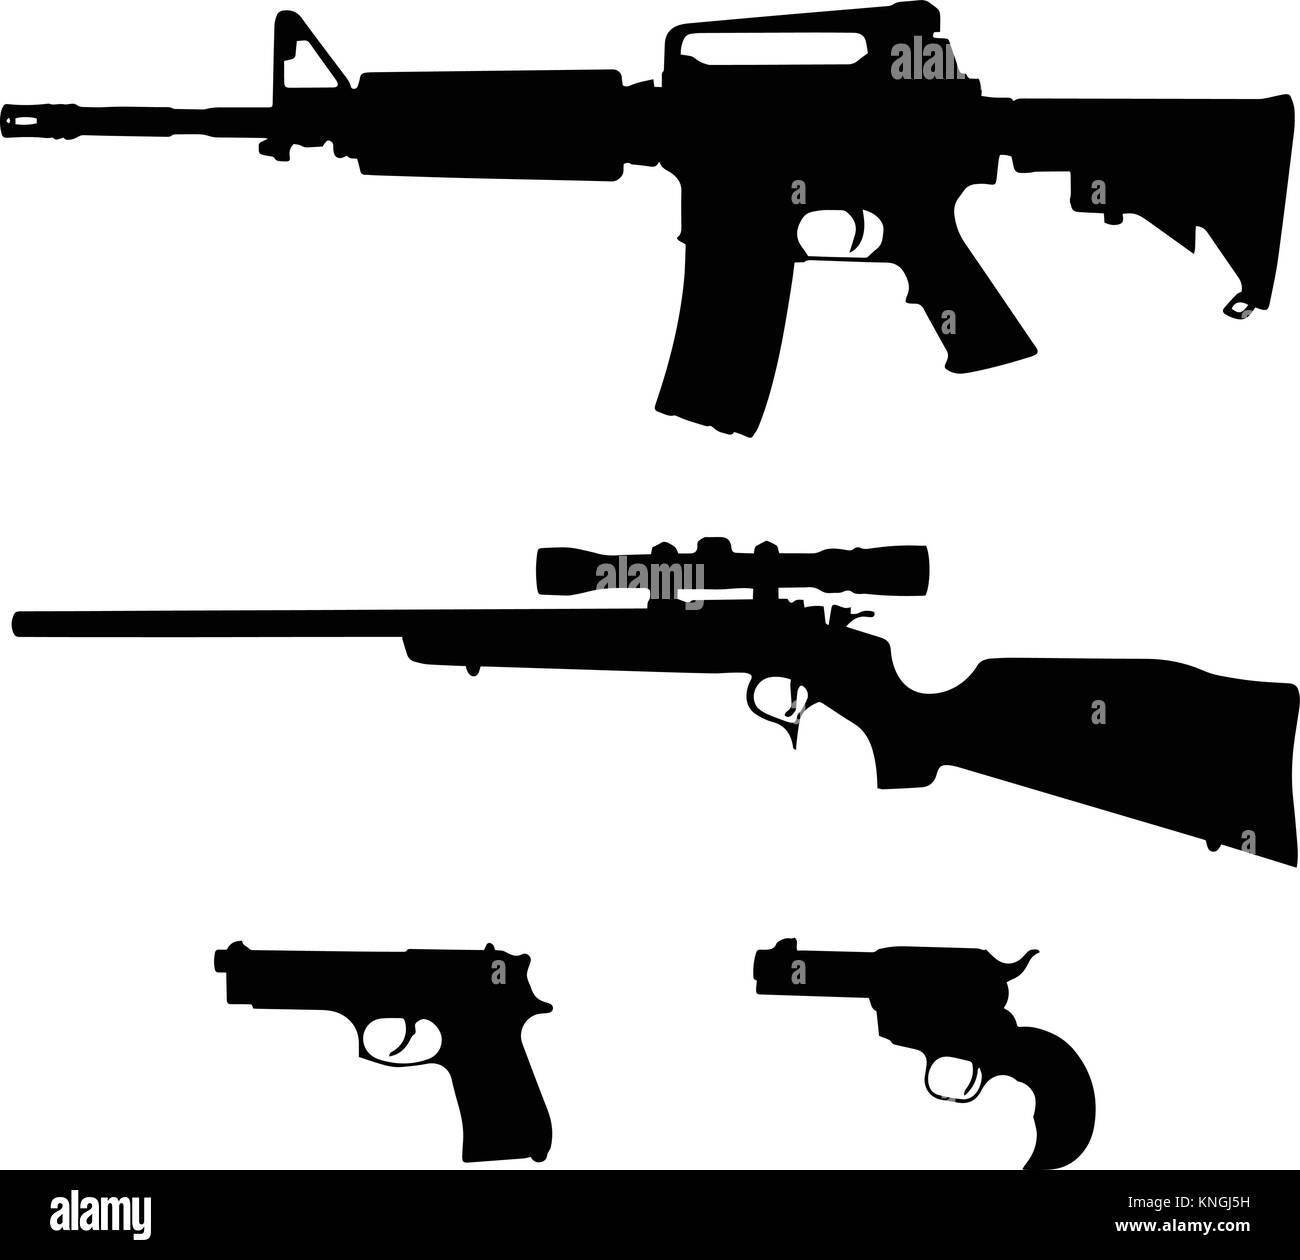 AR-15-Stil halbautomatische Gewehr, Repetierbüchse und Pistolen Silhouette Vektor Stock Vektor